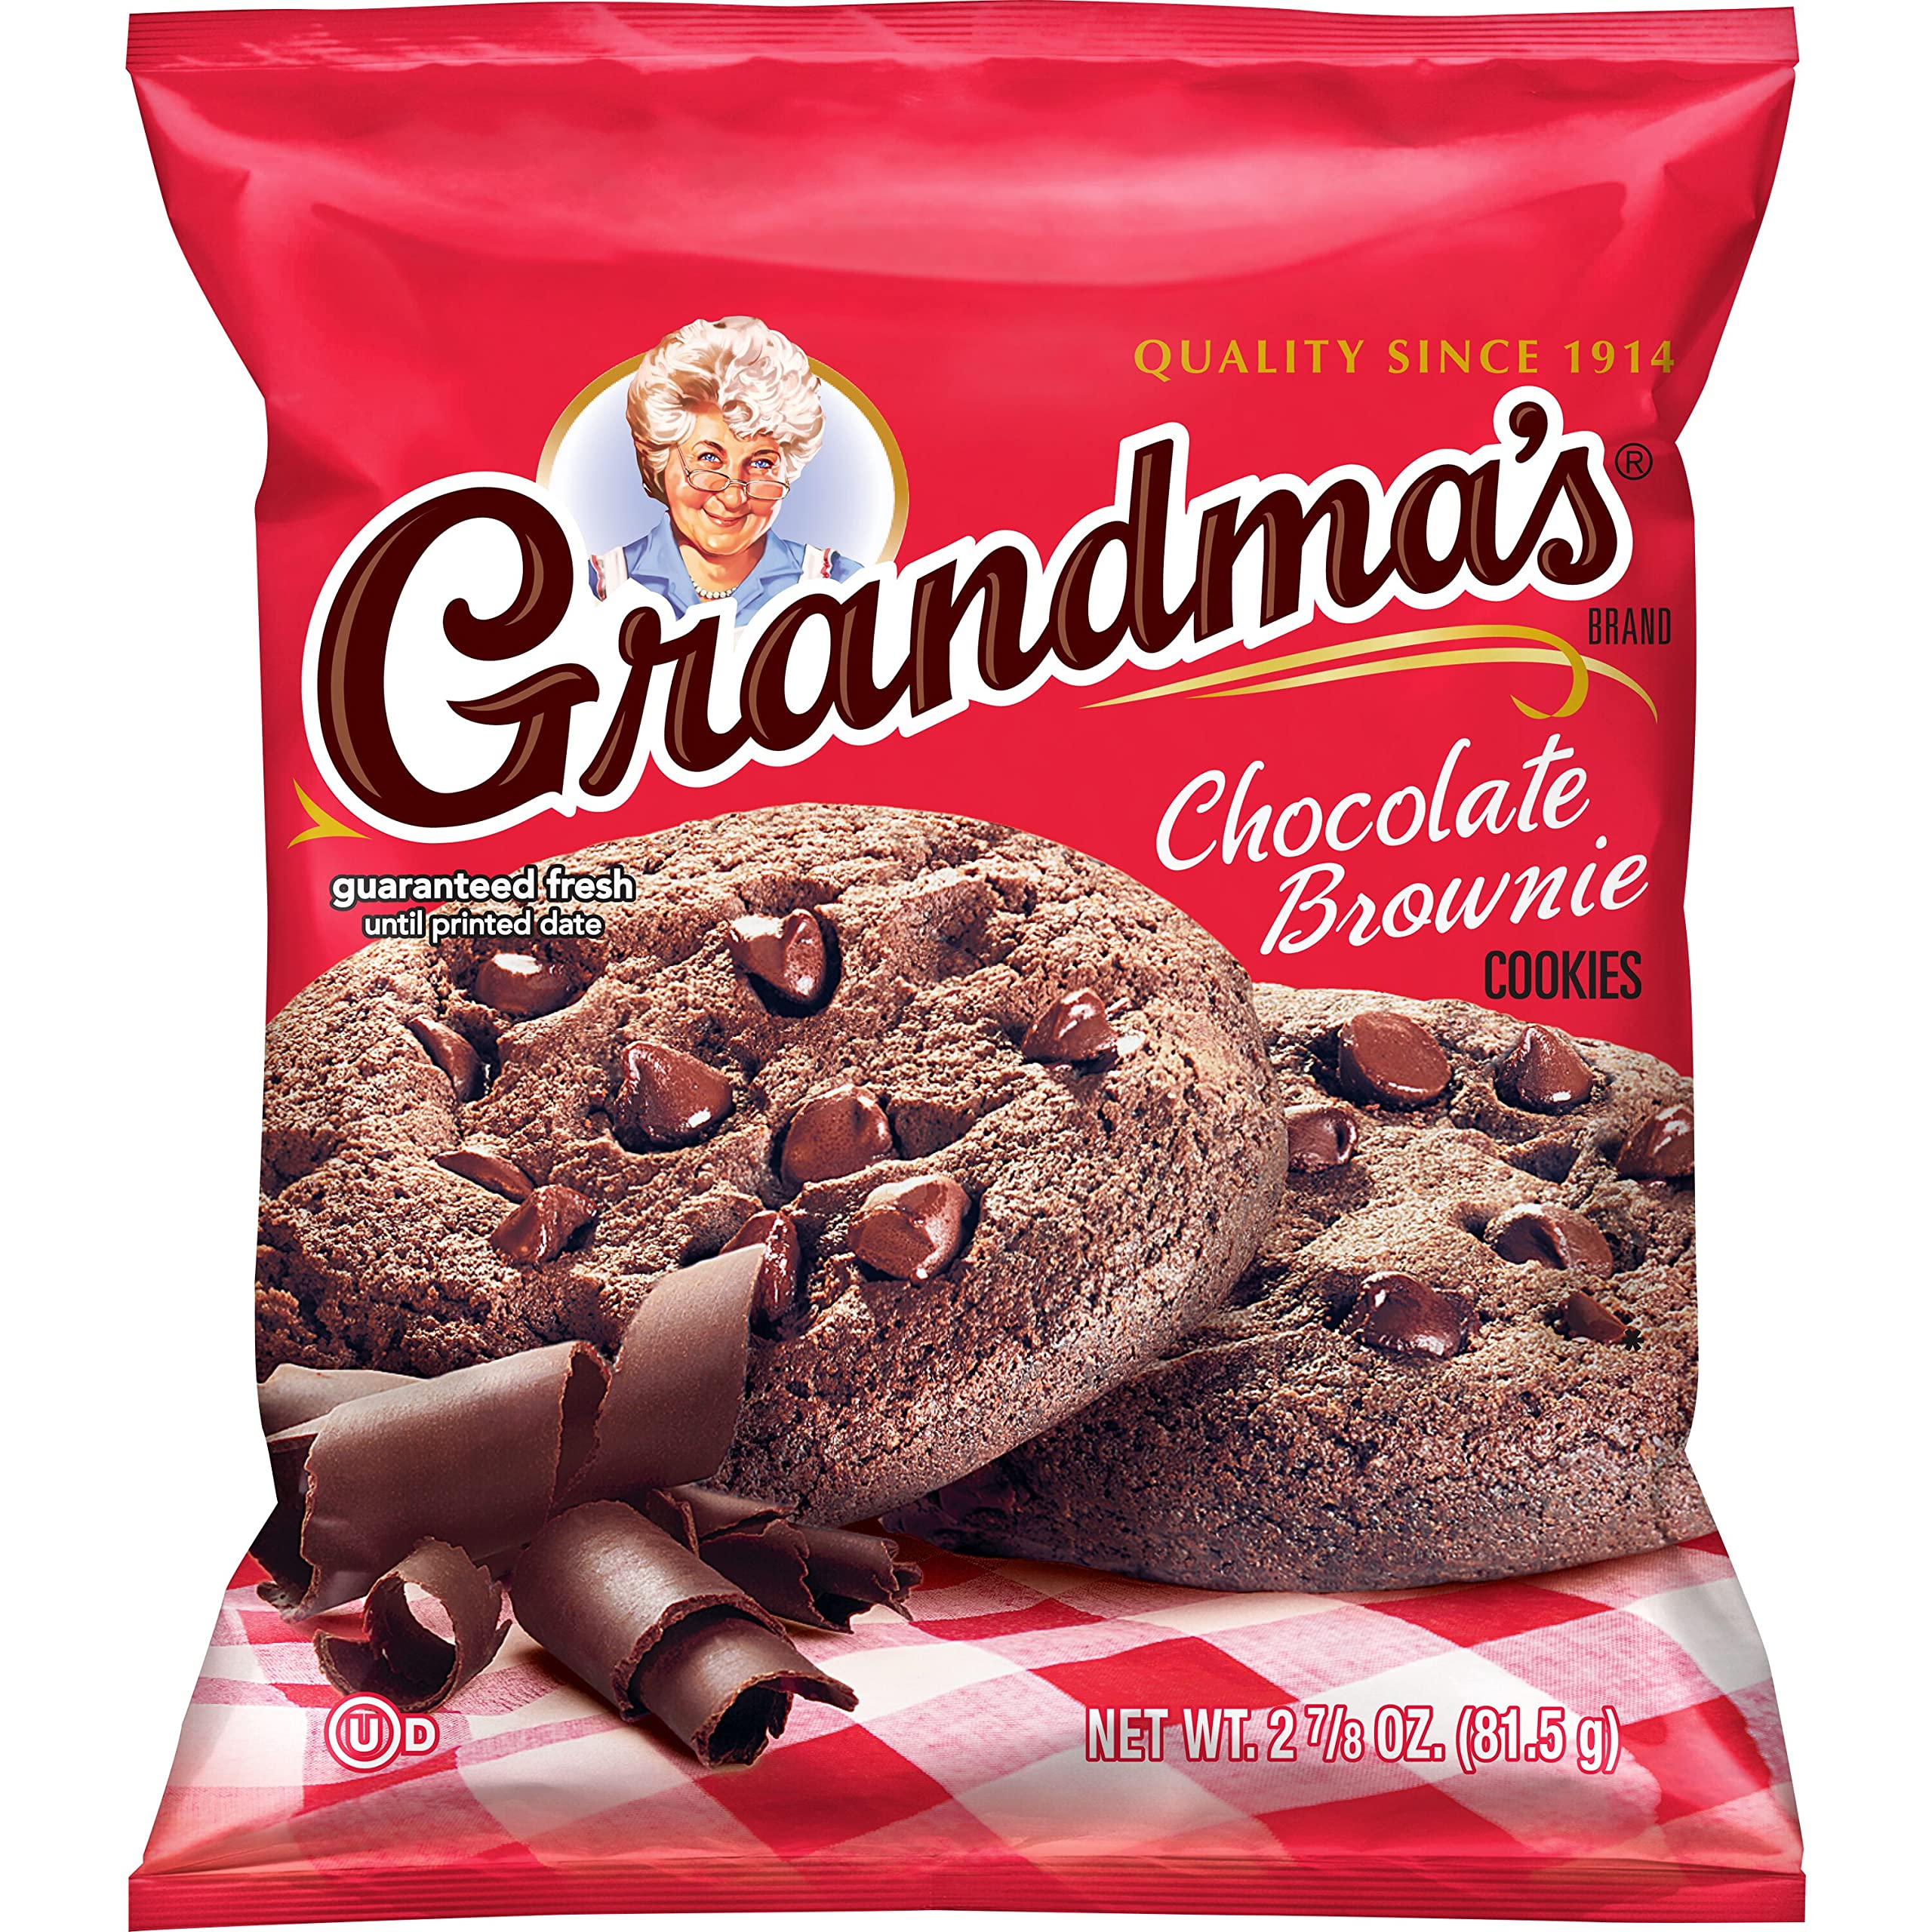 Grandmas chocolate Brownie